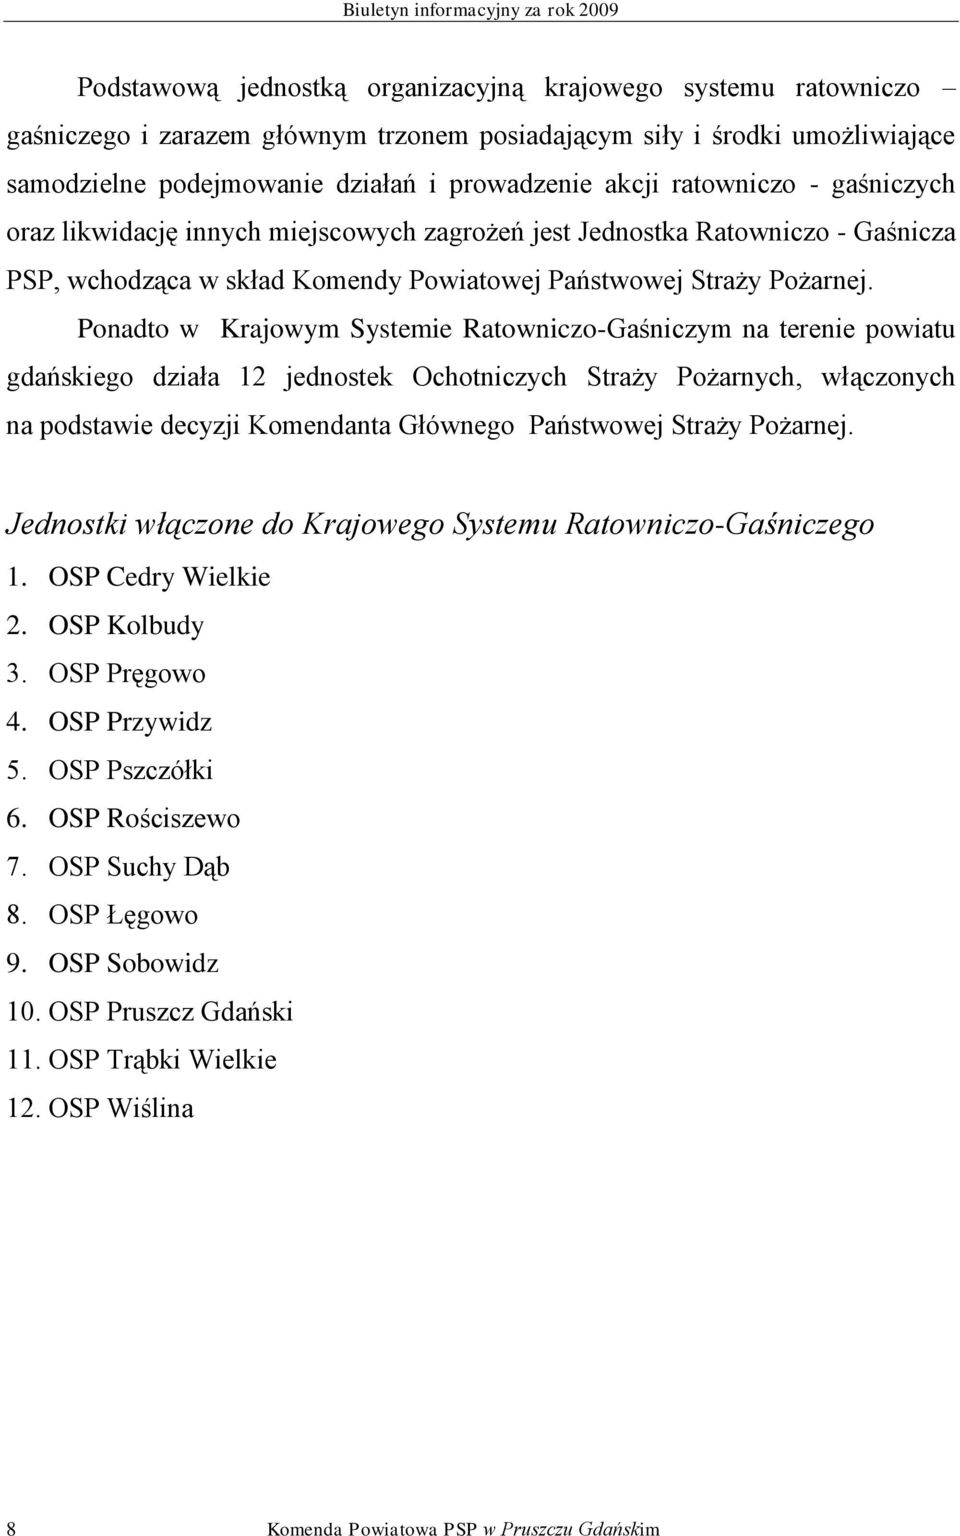 Ponadto w Krajowym Systemie Ratowniczo-Gaśniczym na terenie powiatu gdańskiego działa 12 jednostek Ochotniczych Straży Pożarnych, włączonych na podstawie decyzji Komendanta Głównego Państwowej Straży